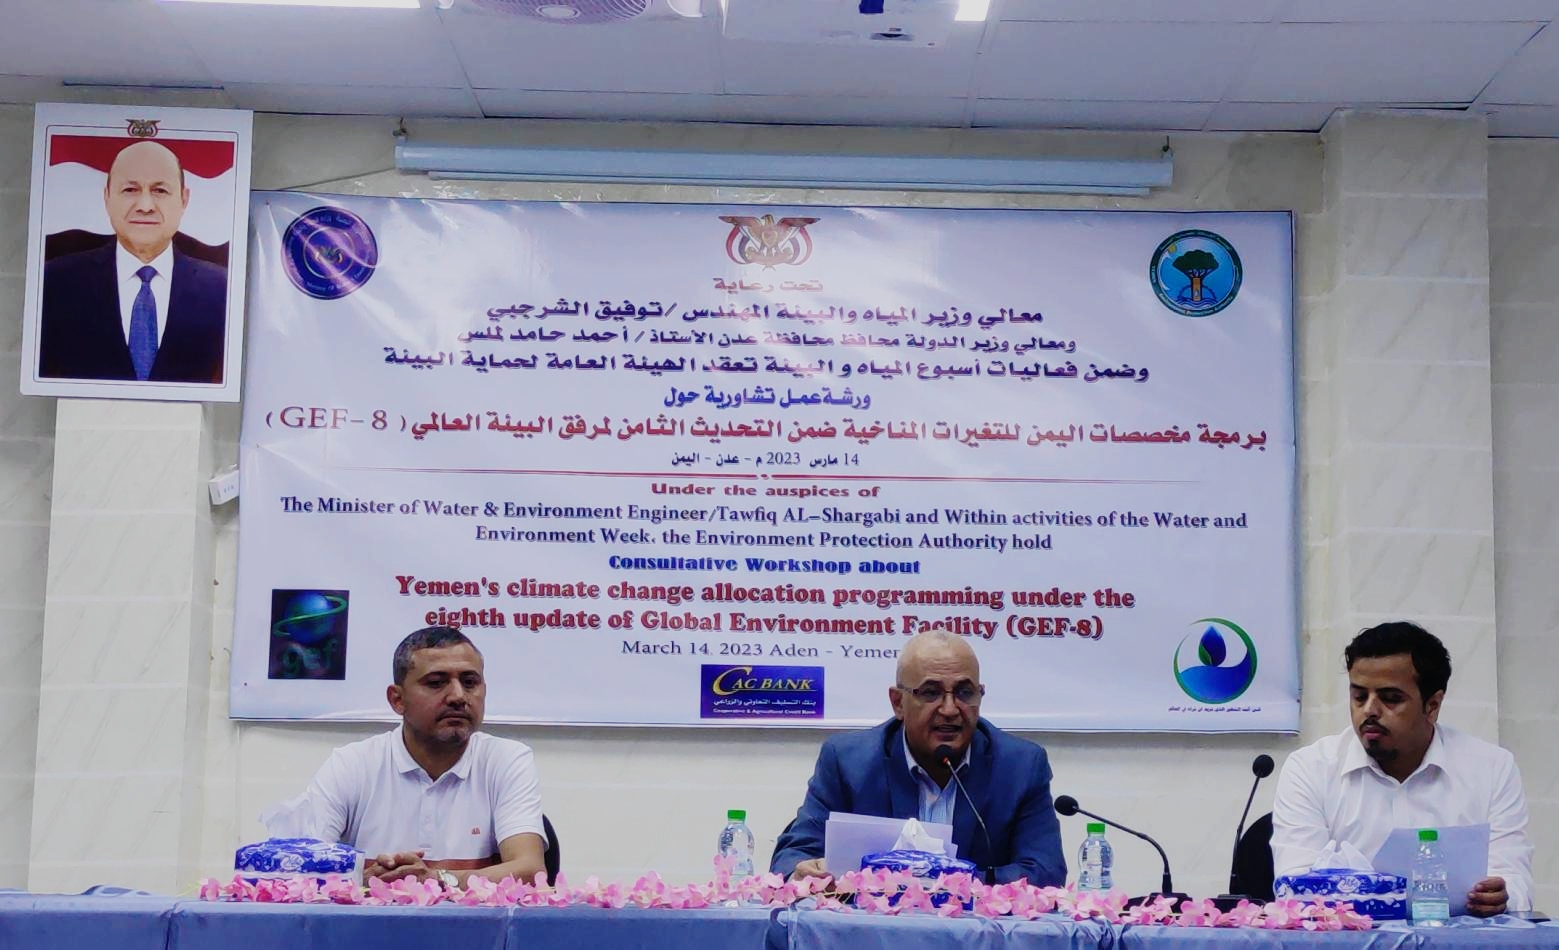 وزير المياه والبيئة يفتتح الورشة التشاورية حول برمجة مخصصات اليمن للتغييرات المناخية